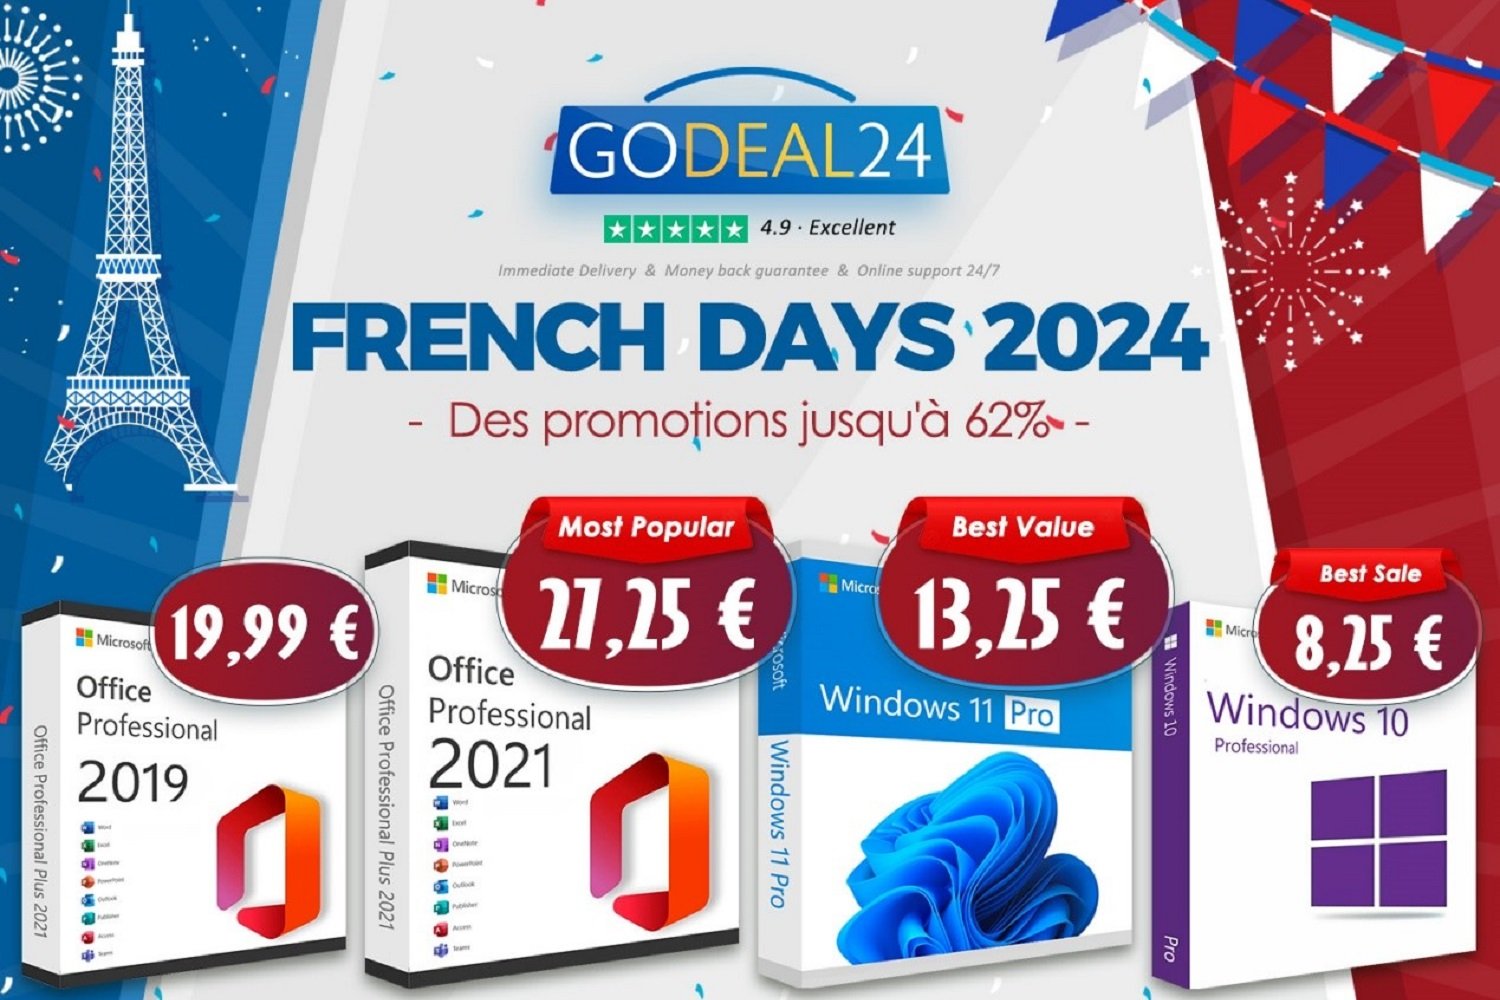 Économisez un max lors des French Days 2024 : Microsoft Office 2021 et Windows 11 à vie à partir de seulement 10 €